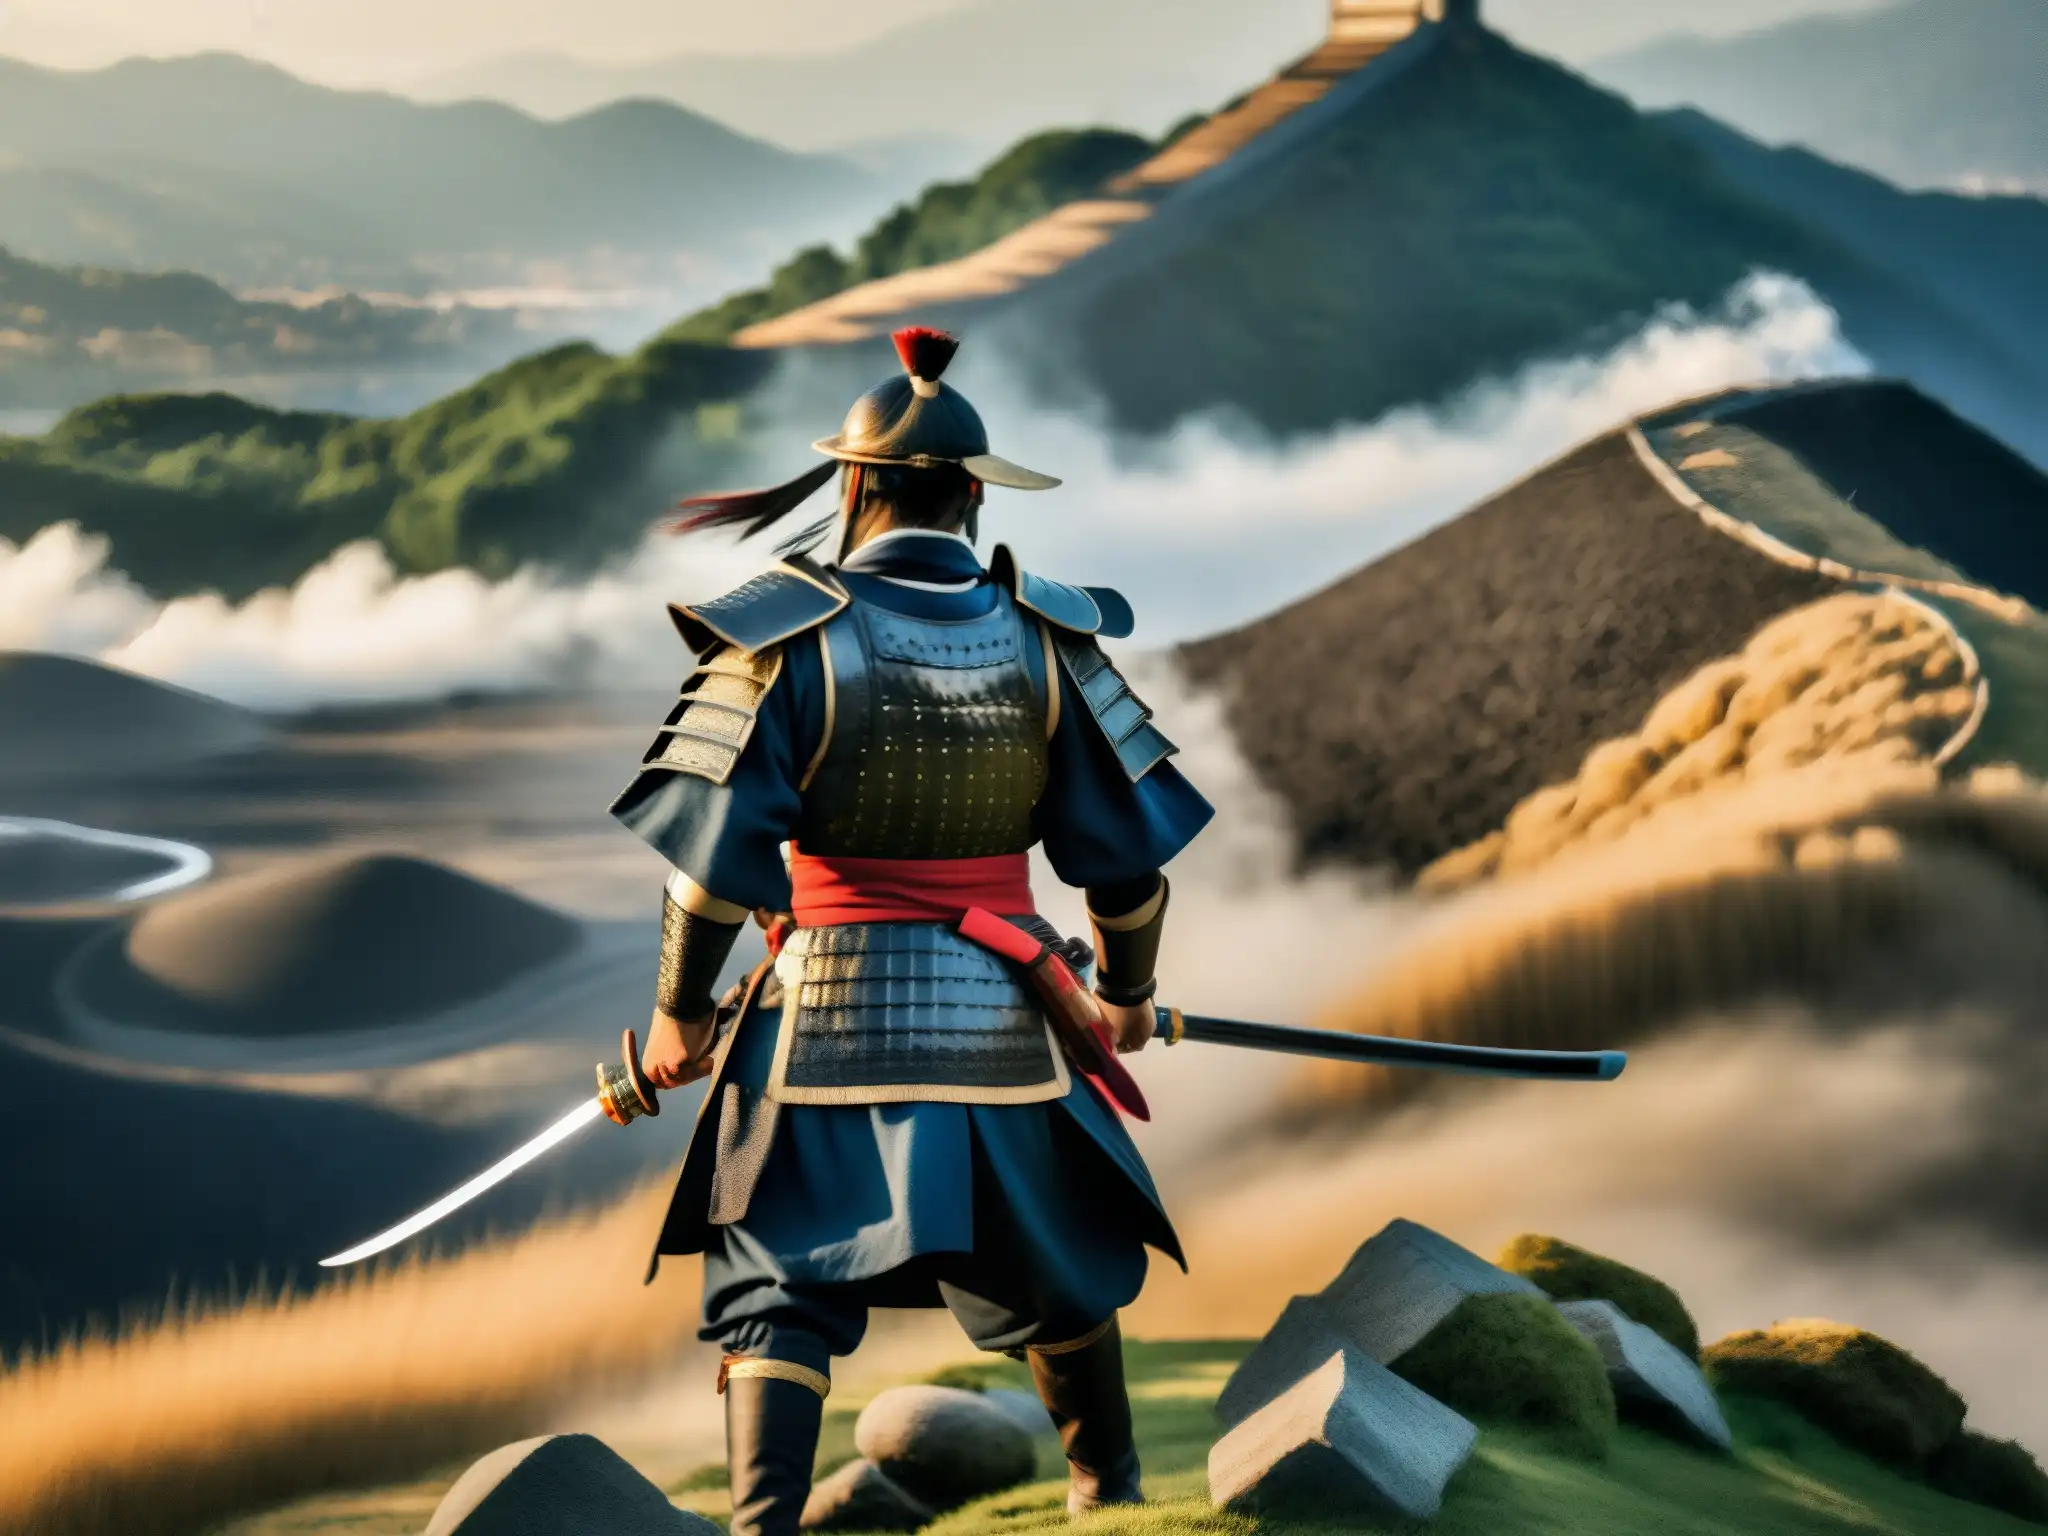 Taira Masakado rebelde samurái lidera valiente rebelión en Japón antiguo, con determinación y fuerza en su mirada